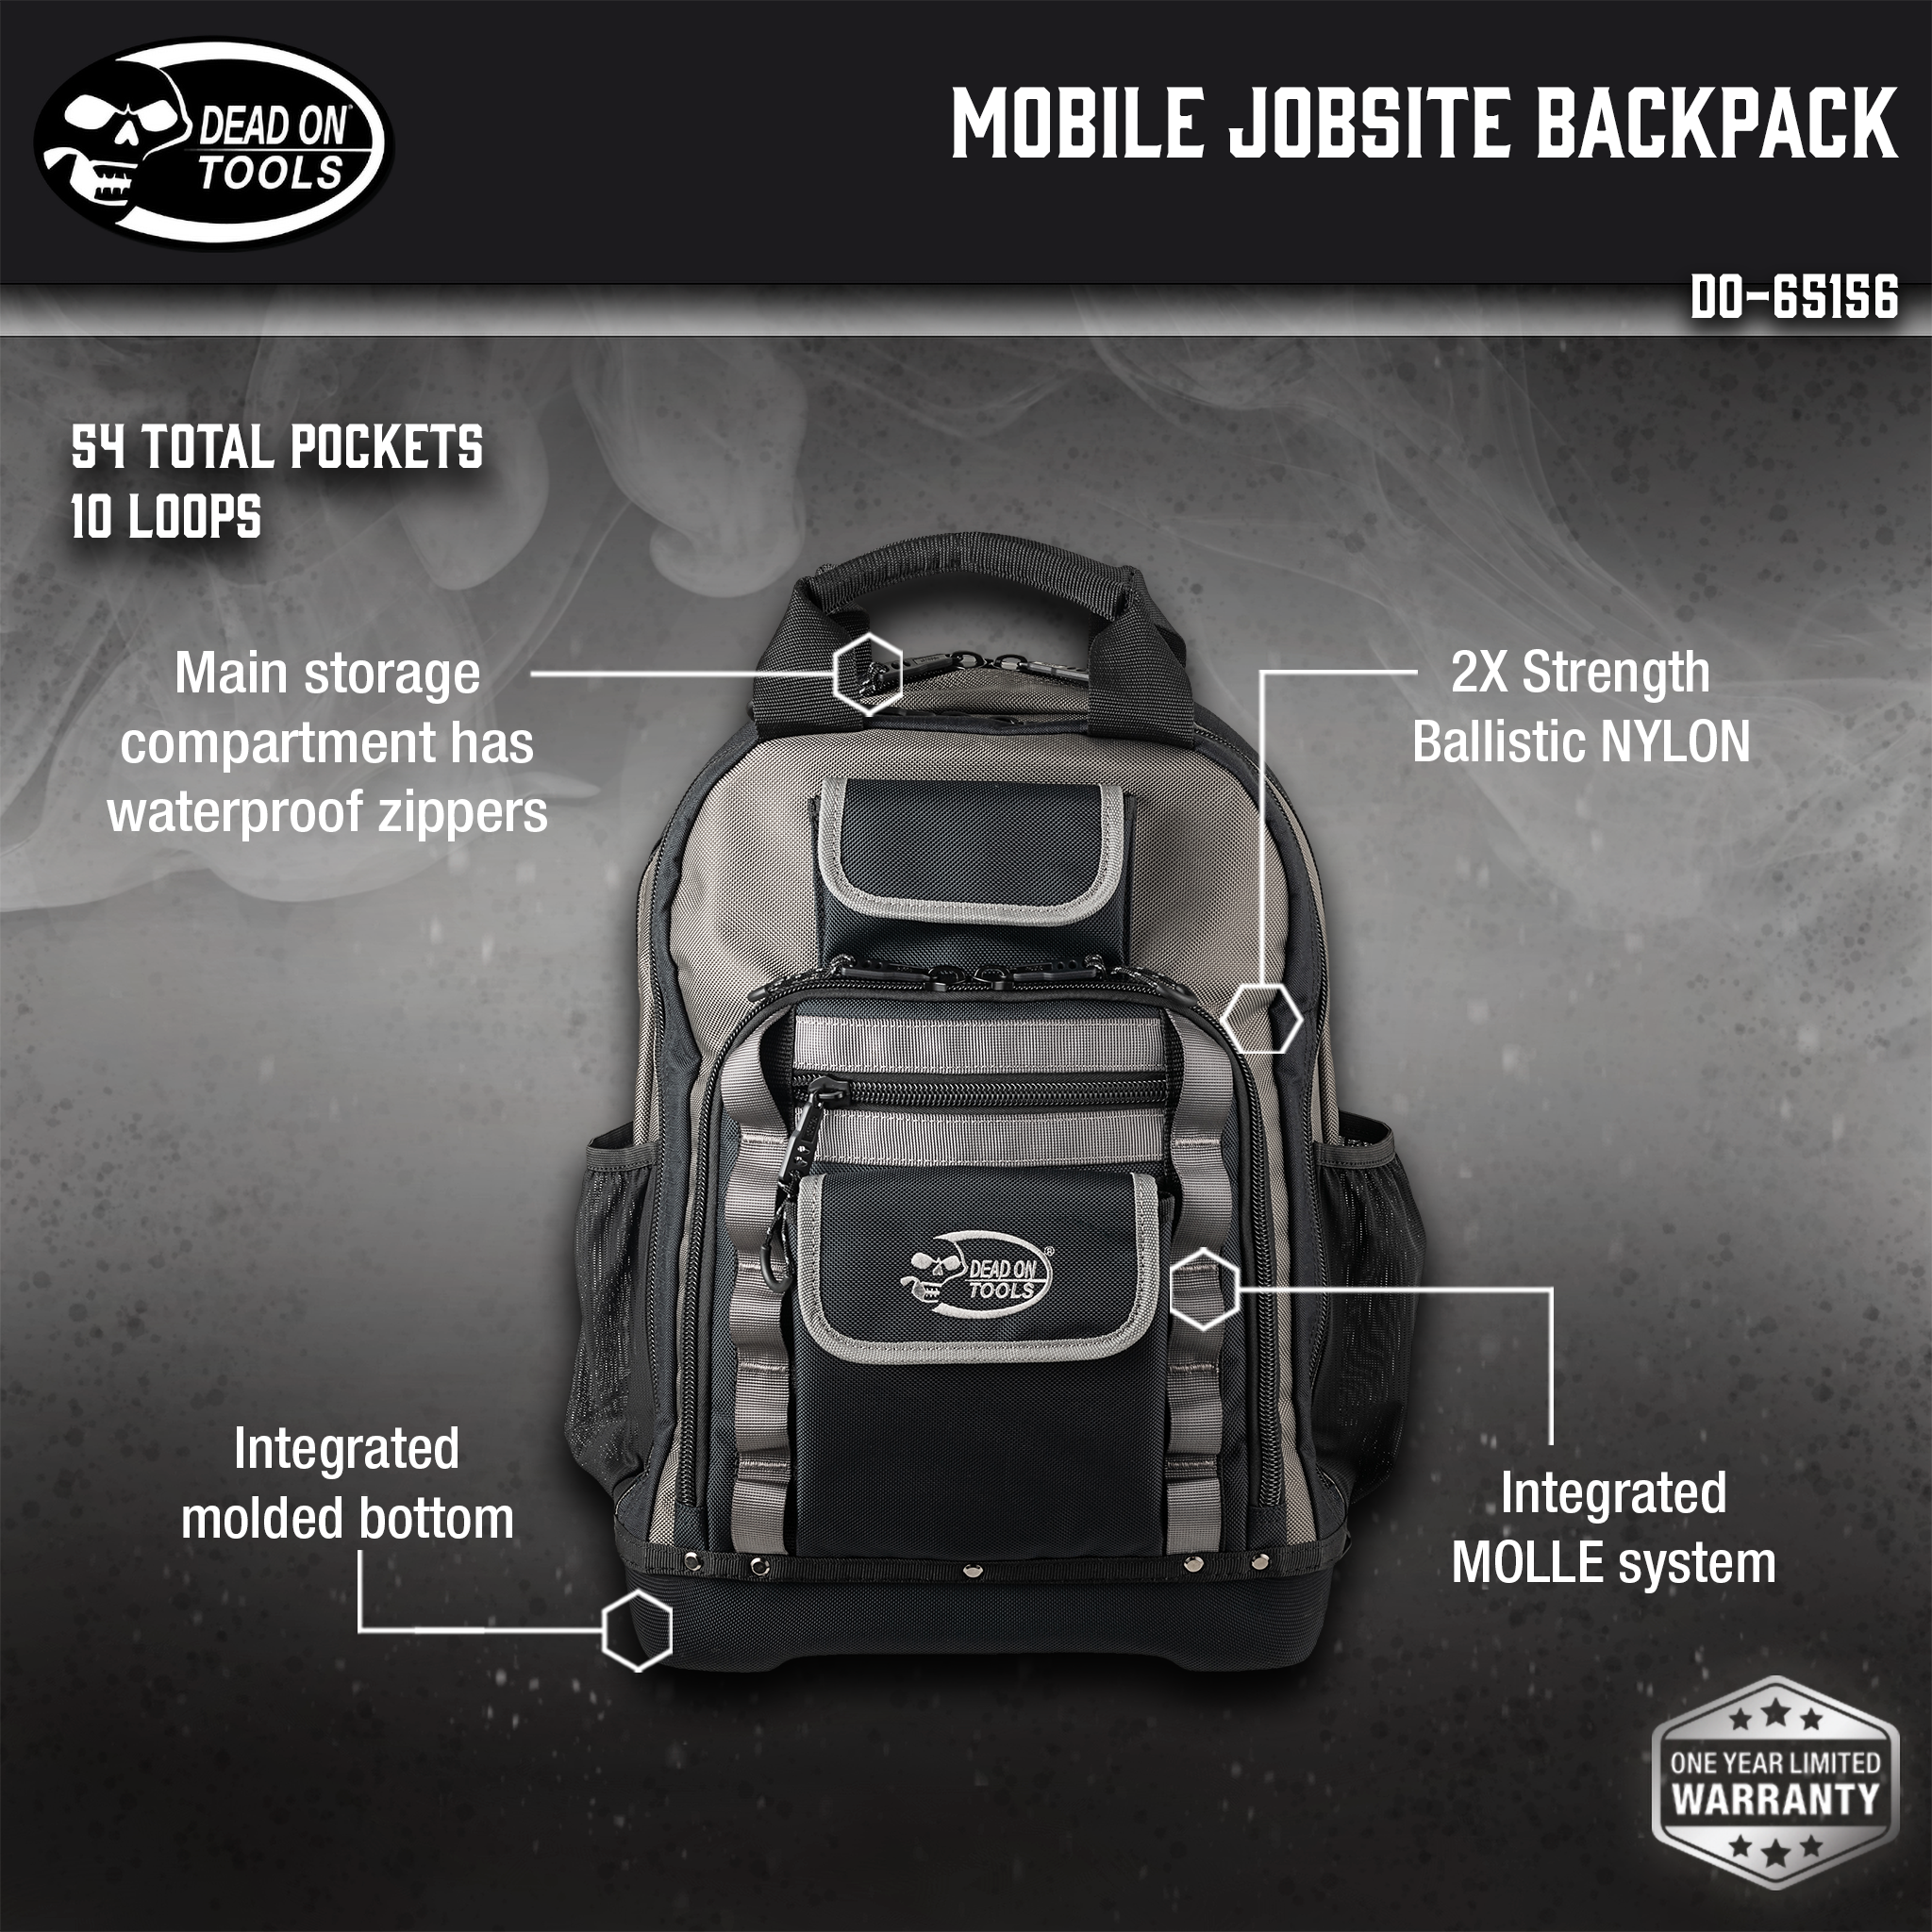 Mobile Jobsite Backpack